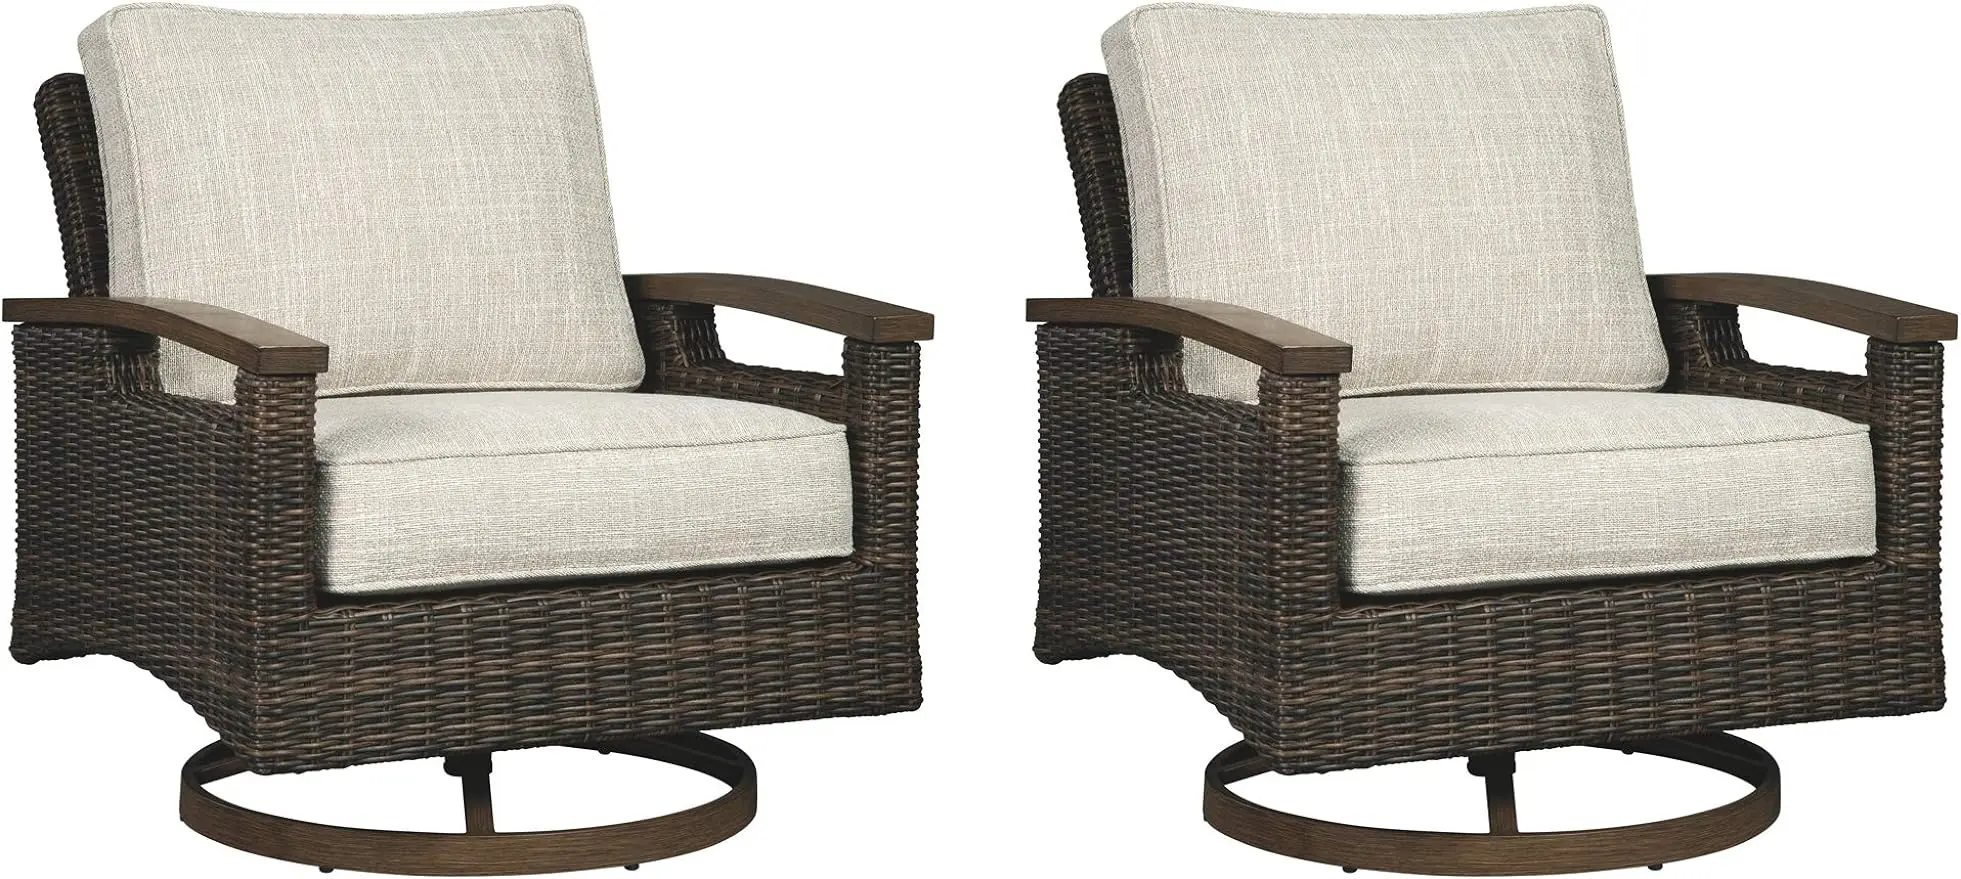 

Фирменный дизайн от Ashley Paradise Trail, набор поворотных мягких стульев для отдыха на открытом воздухе, 2 предмета, бежевый цвет